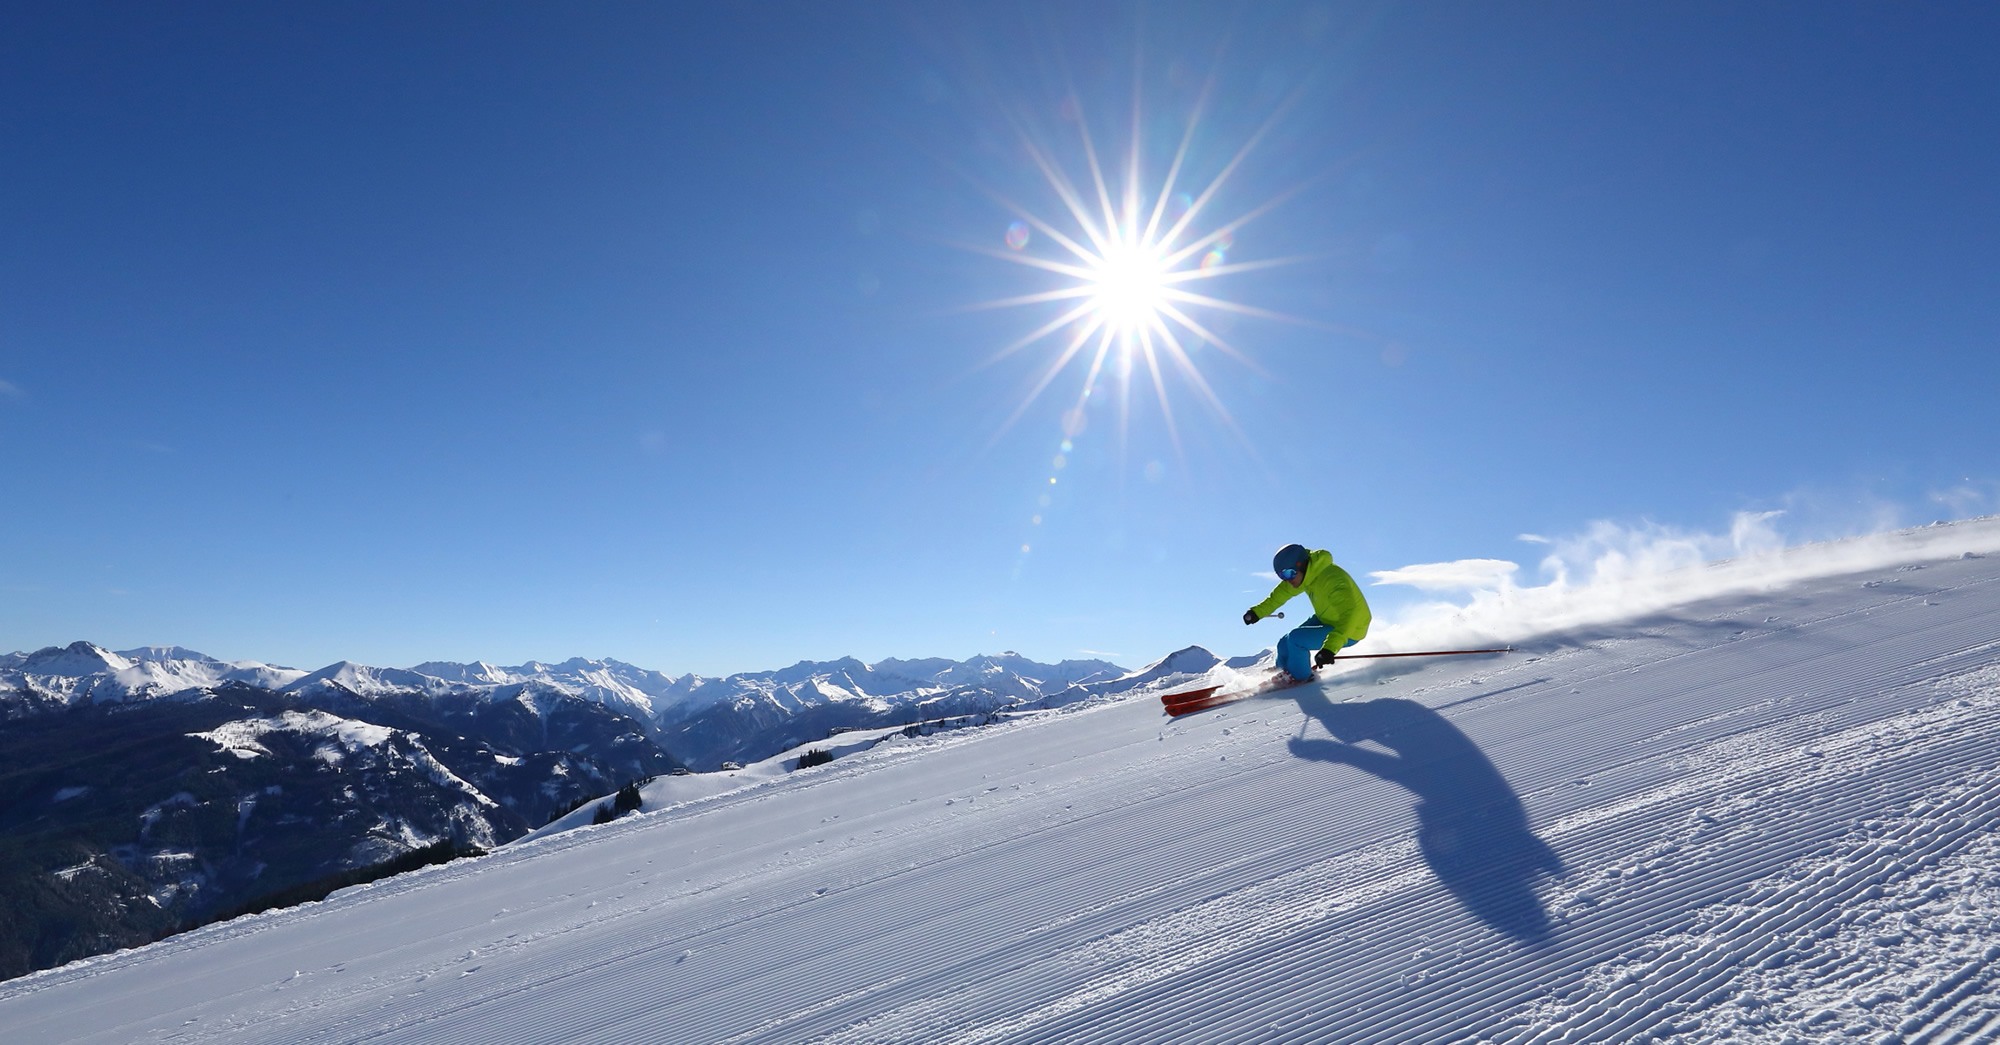 Winterurlaub in Großarl mitten in Ski amadé mit dem Skigebiet Großarltal-Dorfgastein